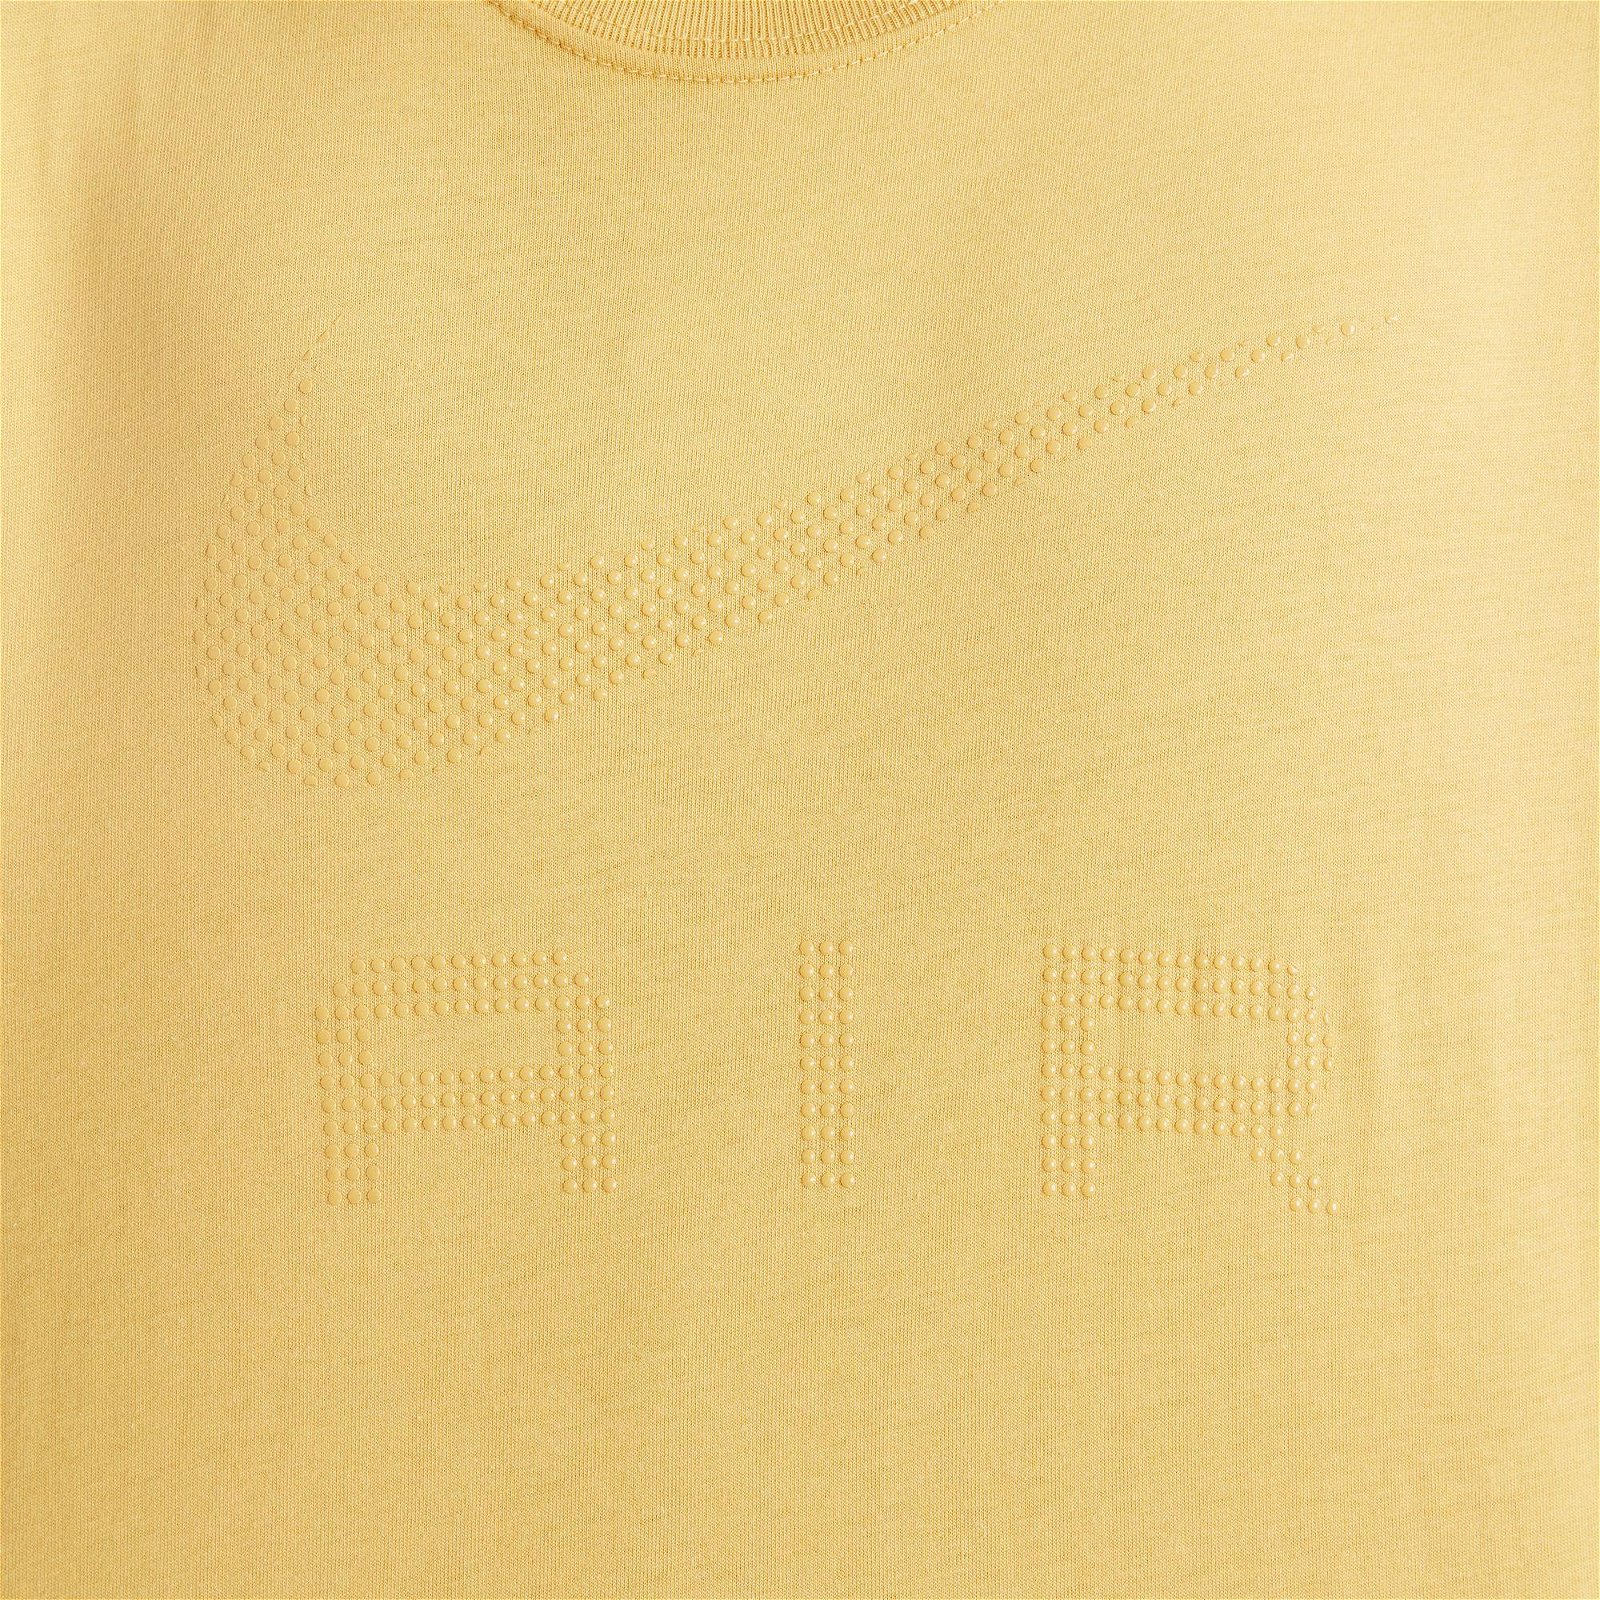 Nike Sportswear M90 Air Erkek Sarı T-Shirt